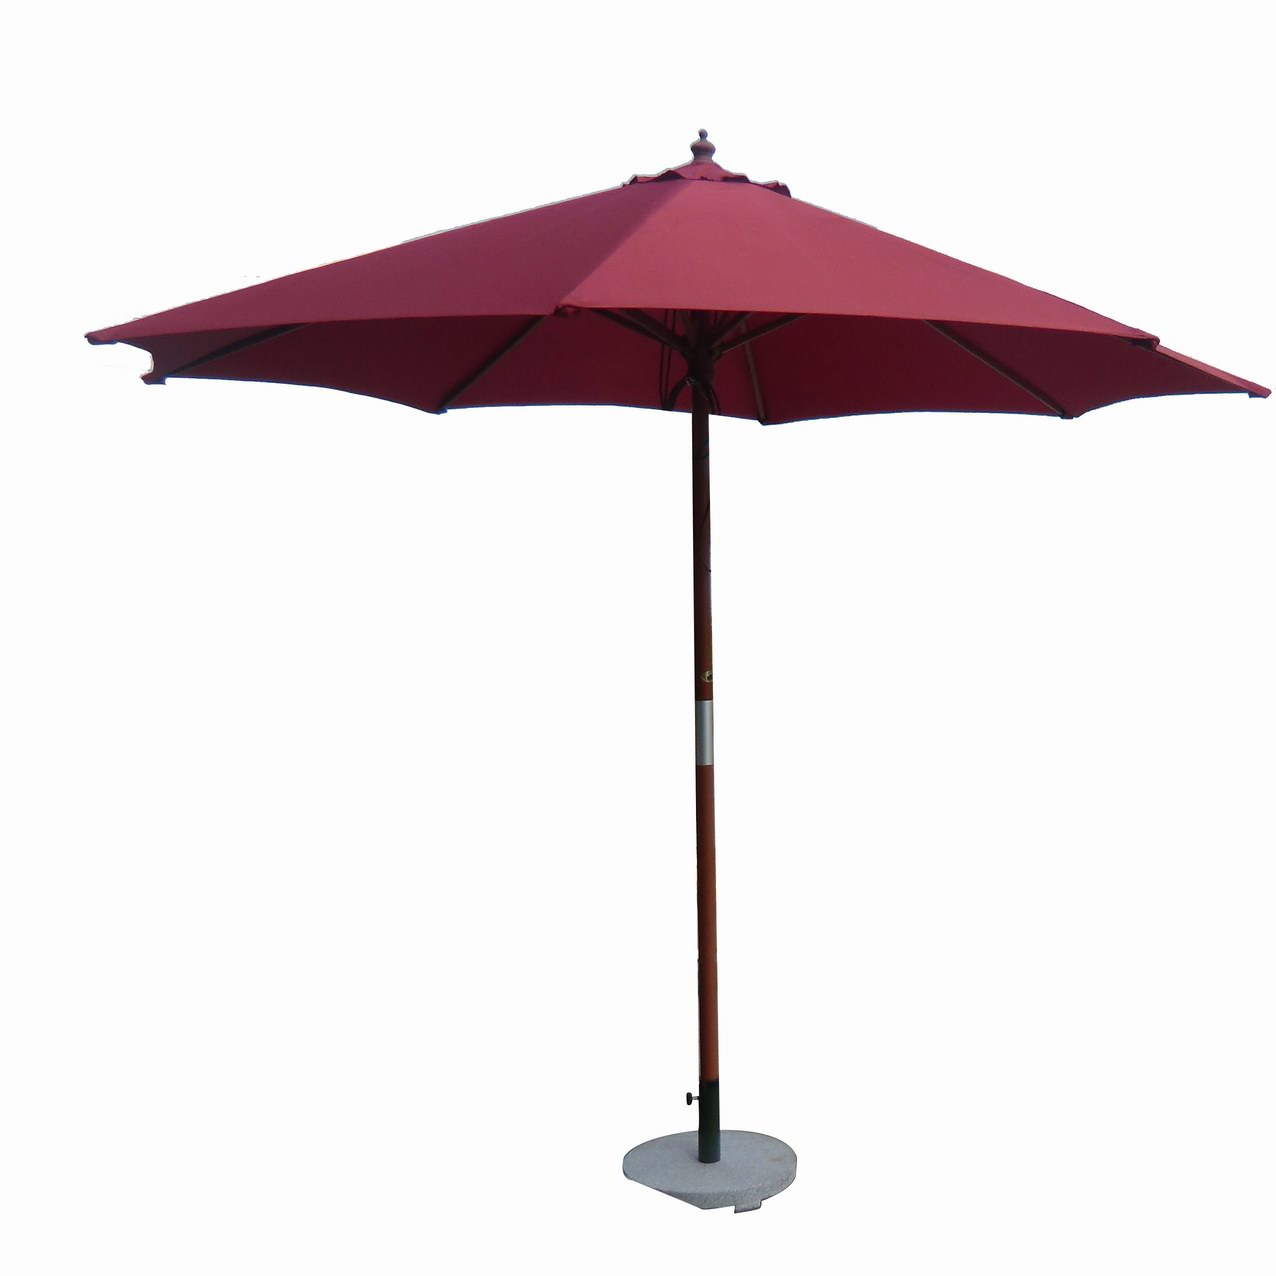 佛山雨伞、佛山太阳伞、佛山帐篷、顺德雨伞、顺德太阳伞、顺德帐篷、中山雨伞、中山太阳伞、雨伞、太阳伞、帐篷